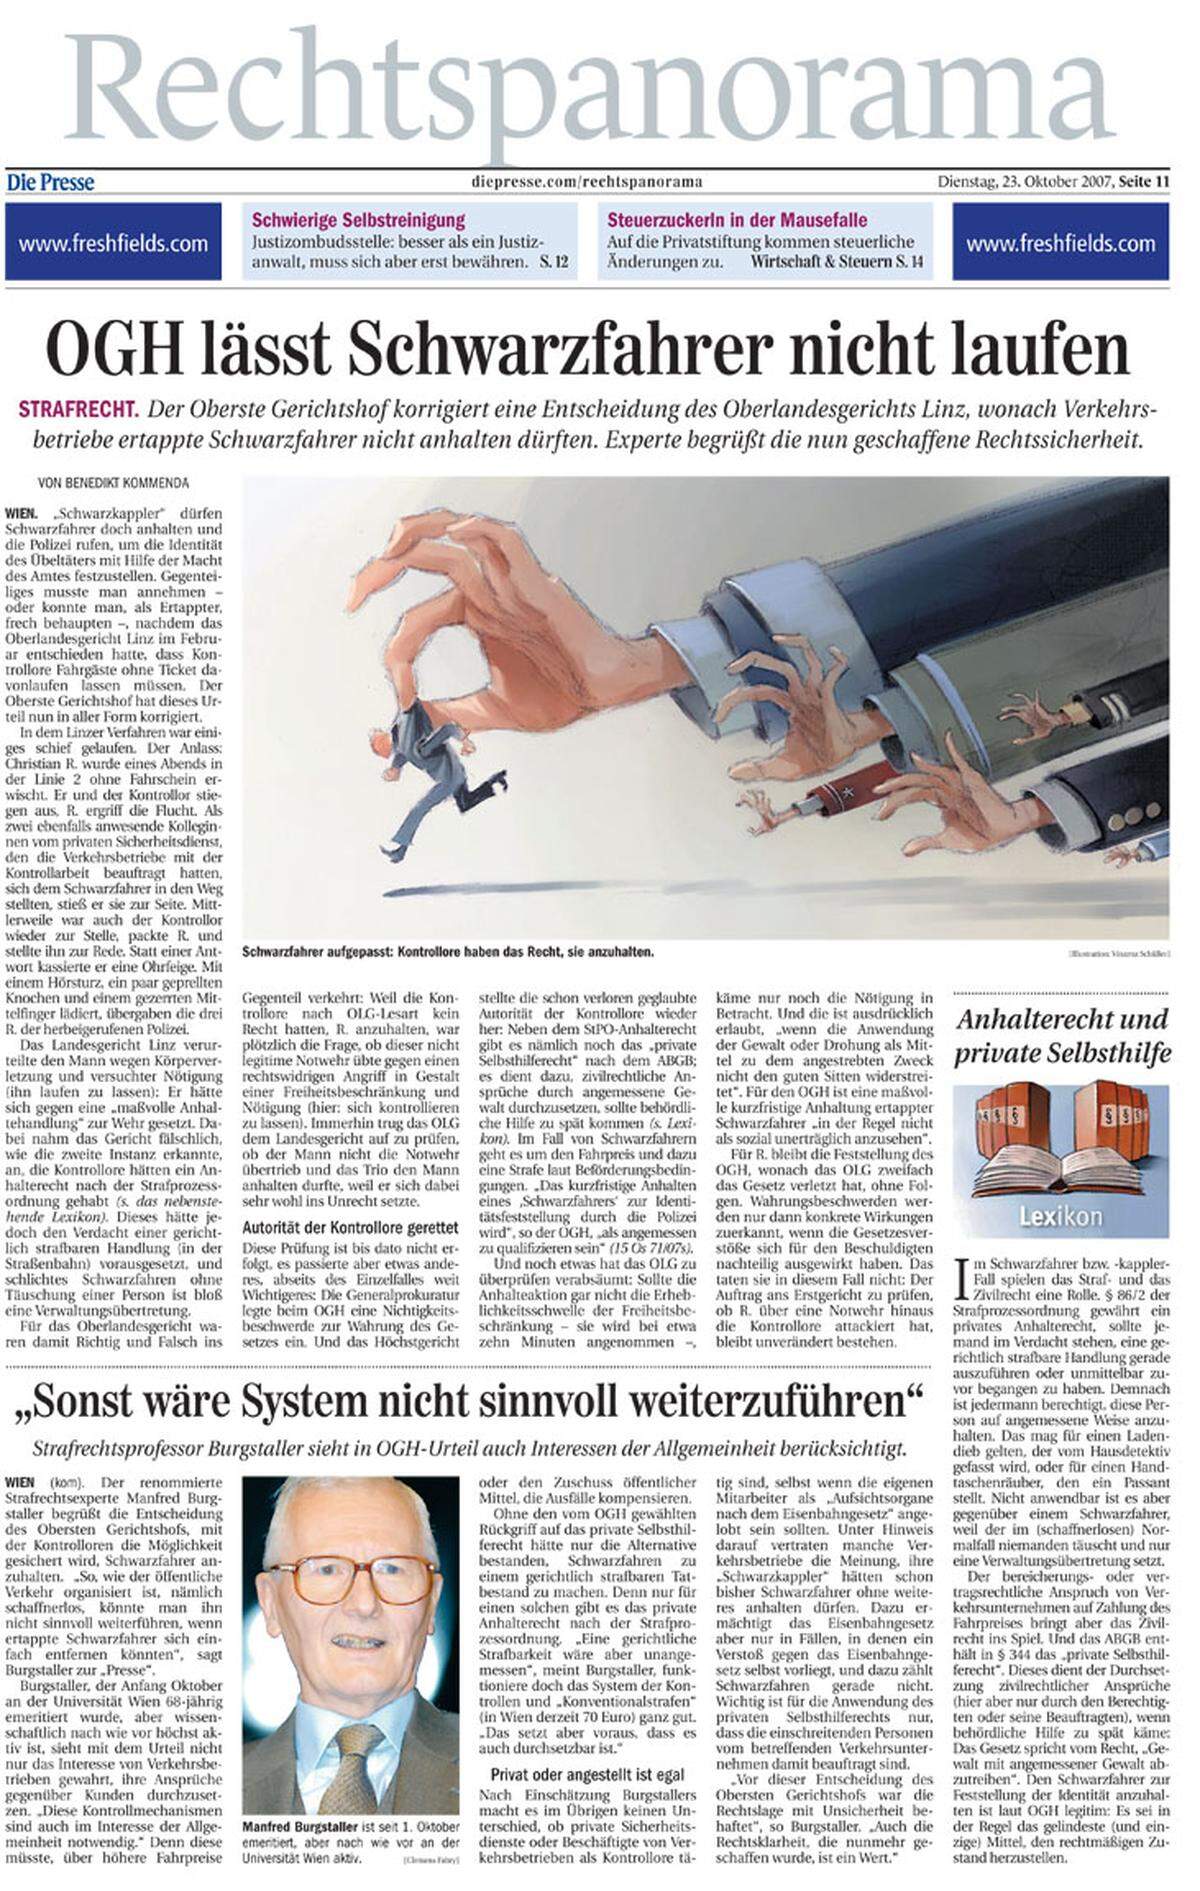 23. Oktober 2007: Der OGH korrigiert ein Urteil, das für viel Aufsehen gesorgt hat. Das Oberlandesgericht Linz hatte entschieden, dass Verkehrsbetriebe ertappte Schwarzfahrer nicht anhalten dürfen.